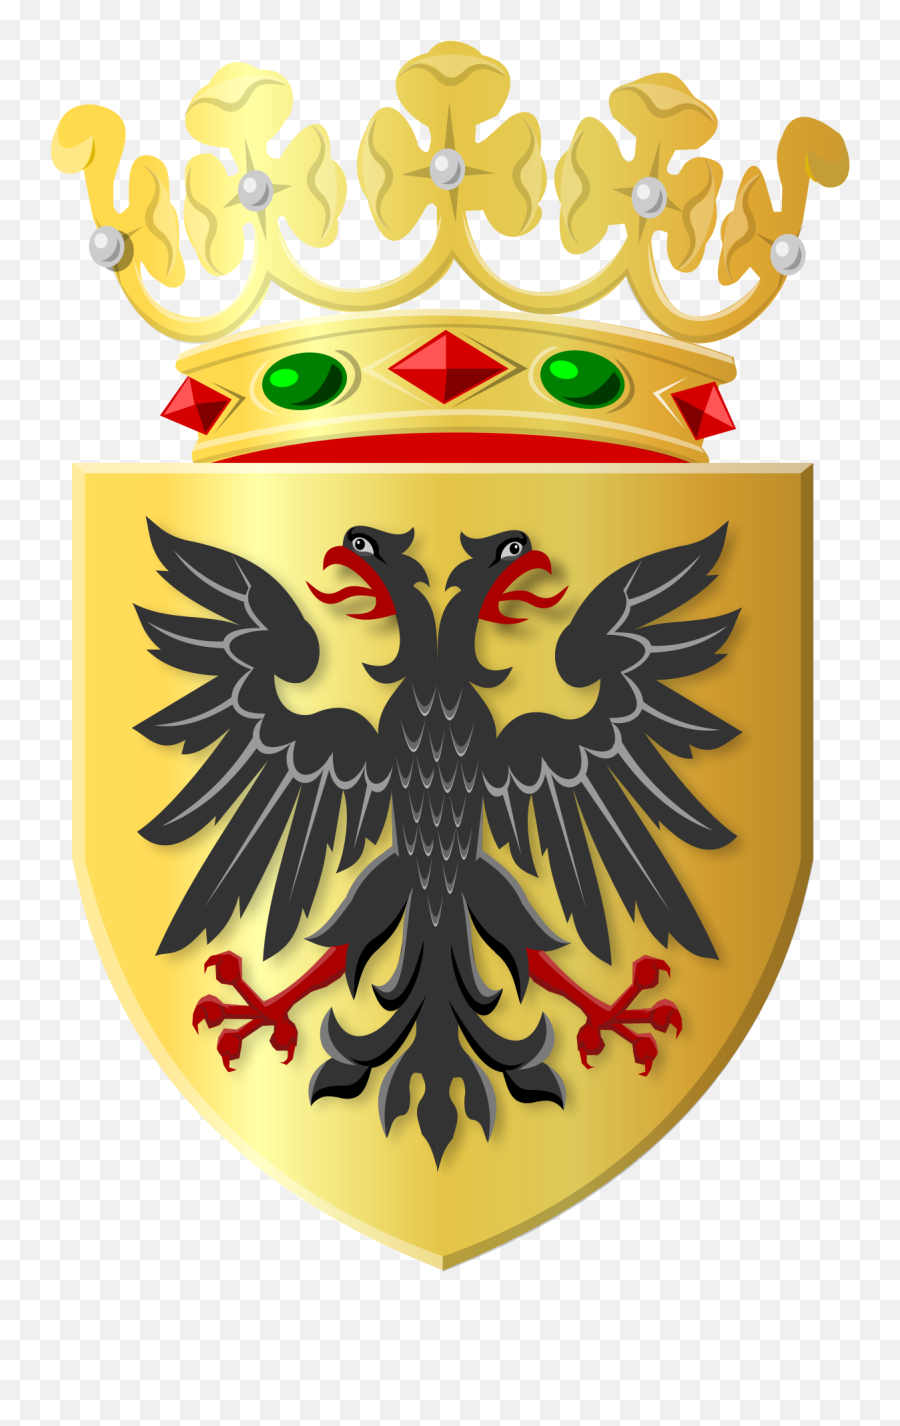 Filegolden Shield With Black Eagle And Golden Crownsvg - Gemeente Loppersum Png,Golden Crown Png